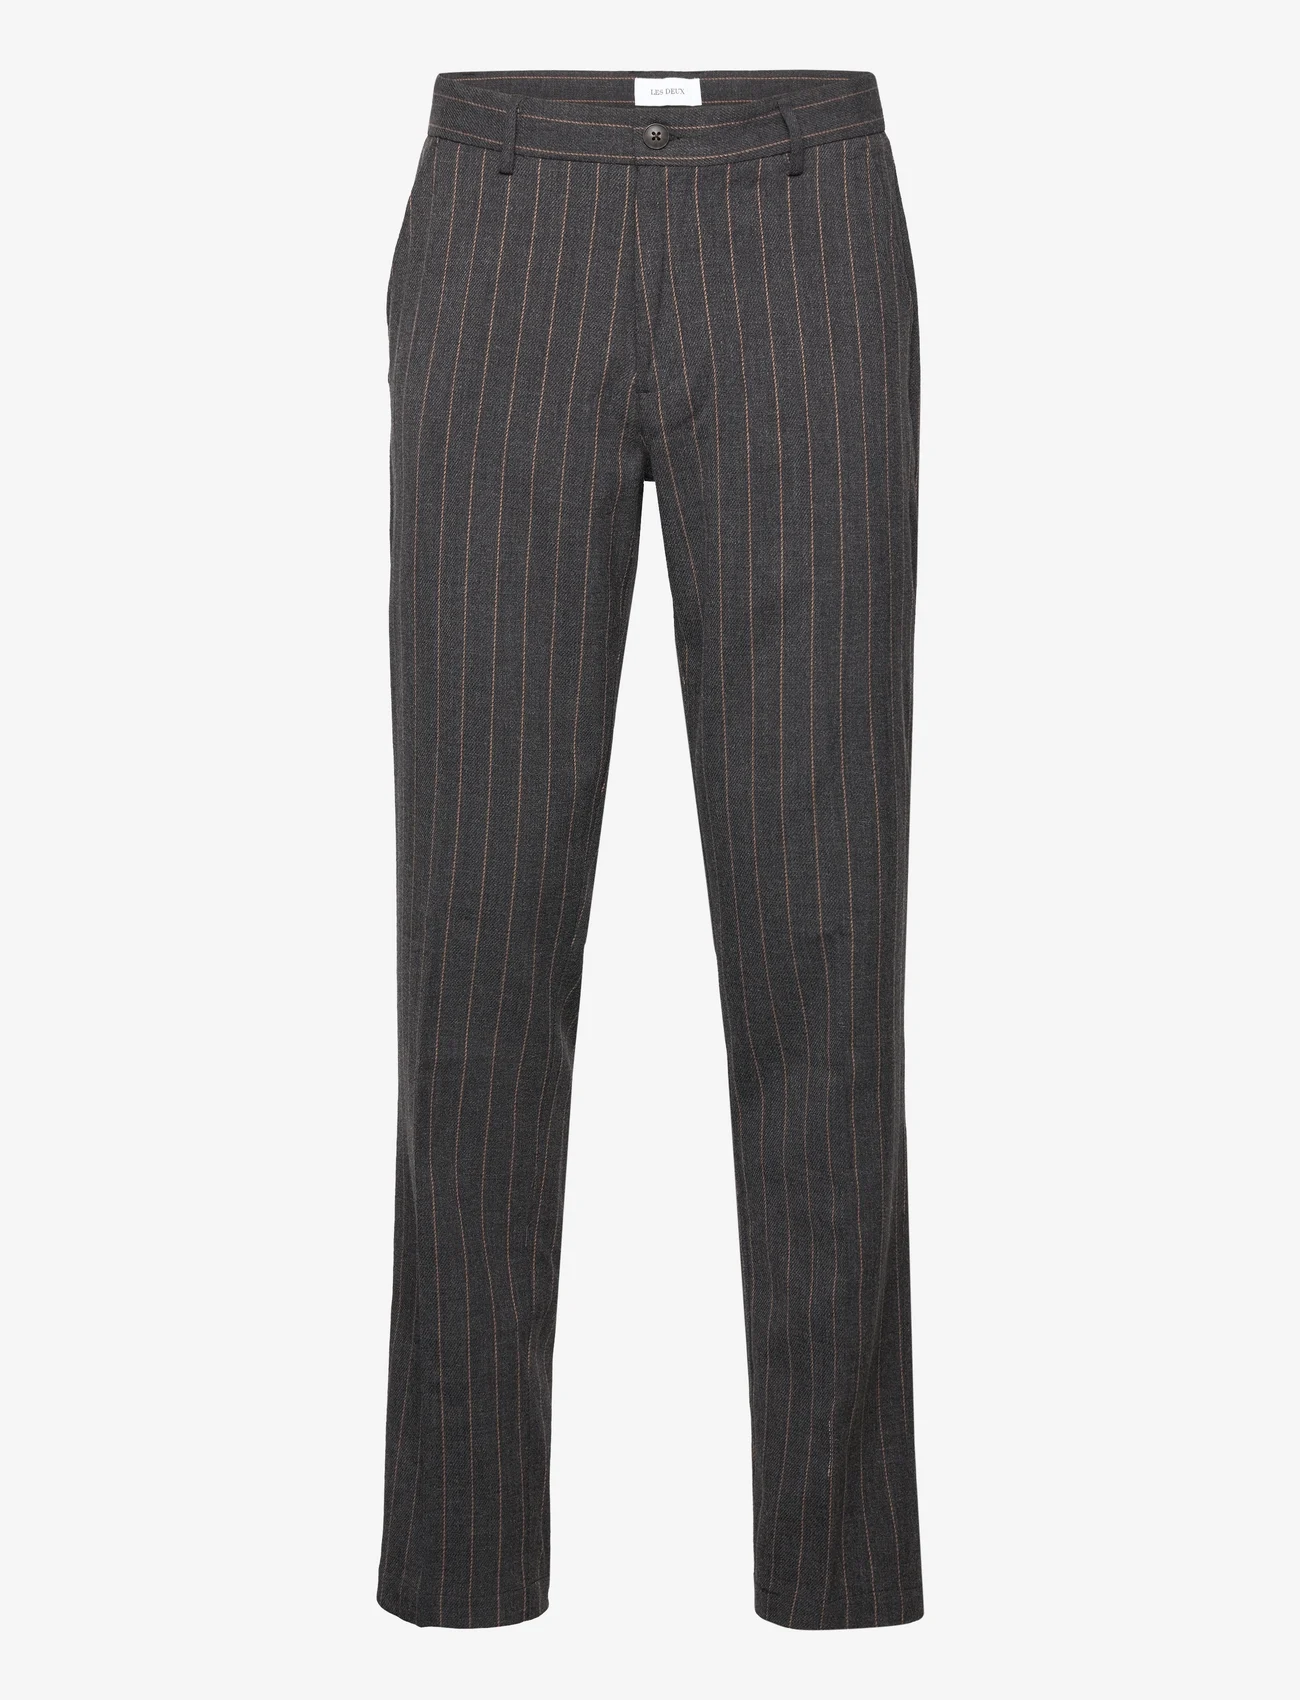 Les Deux - Como Reg Pinstripe Suit Pants - suit trousers - dark grey melange/rubber - 0